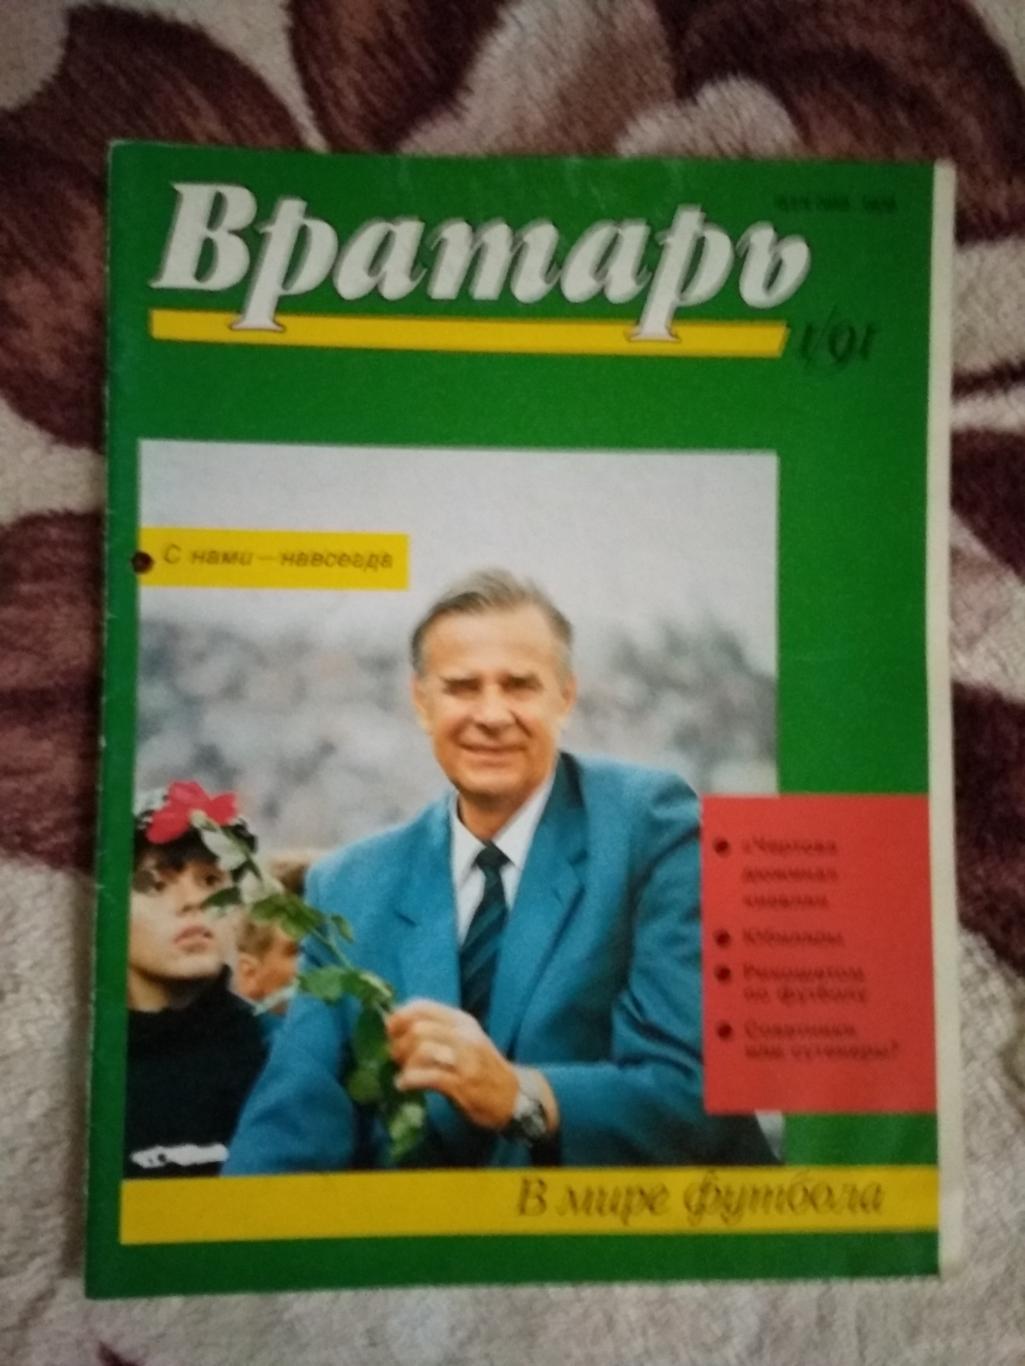 Статья.Футбол.Л.Яшин - Динамо (Москва,СССР).Журнал Вратарь 1991.